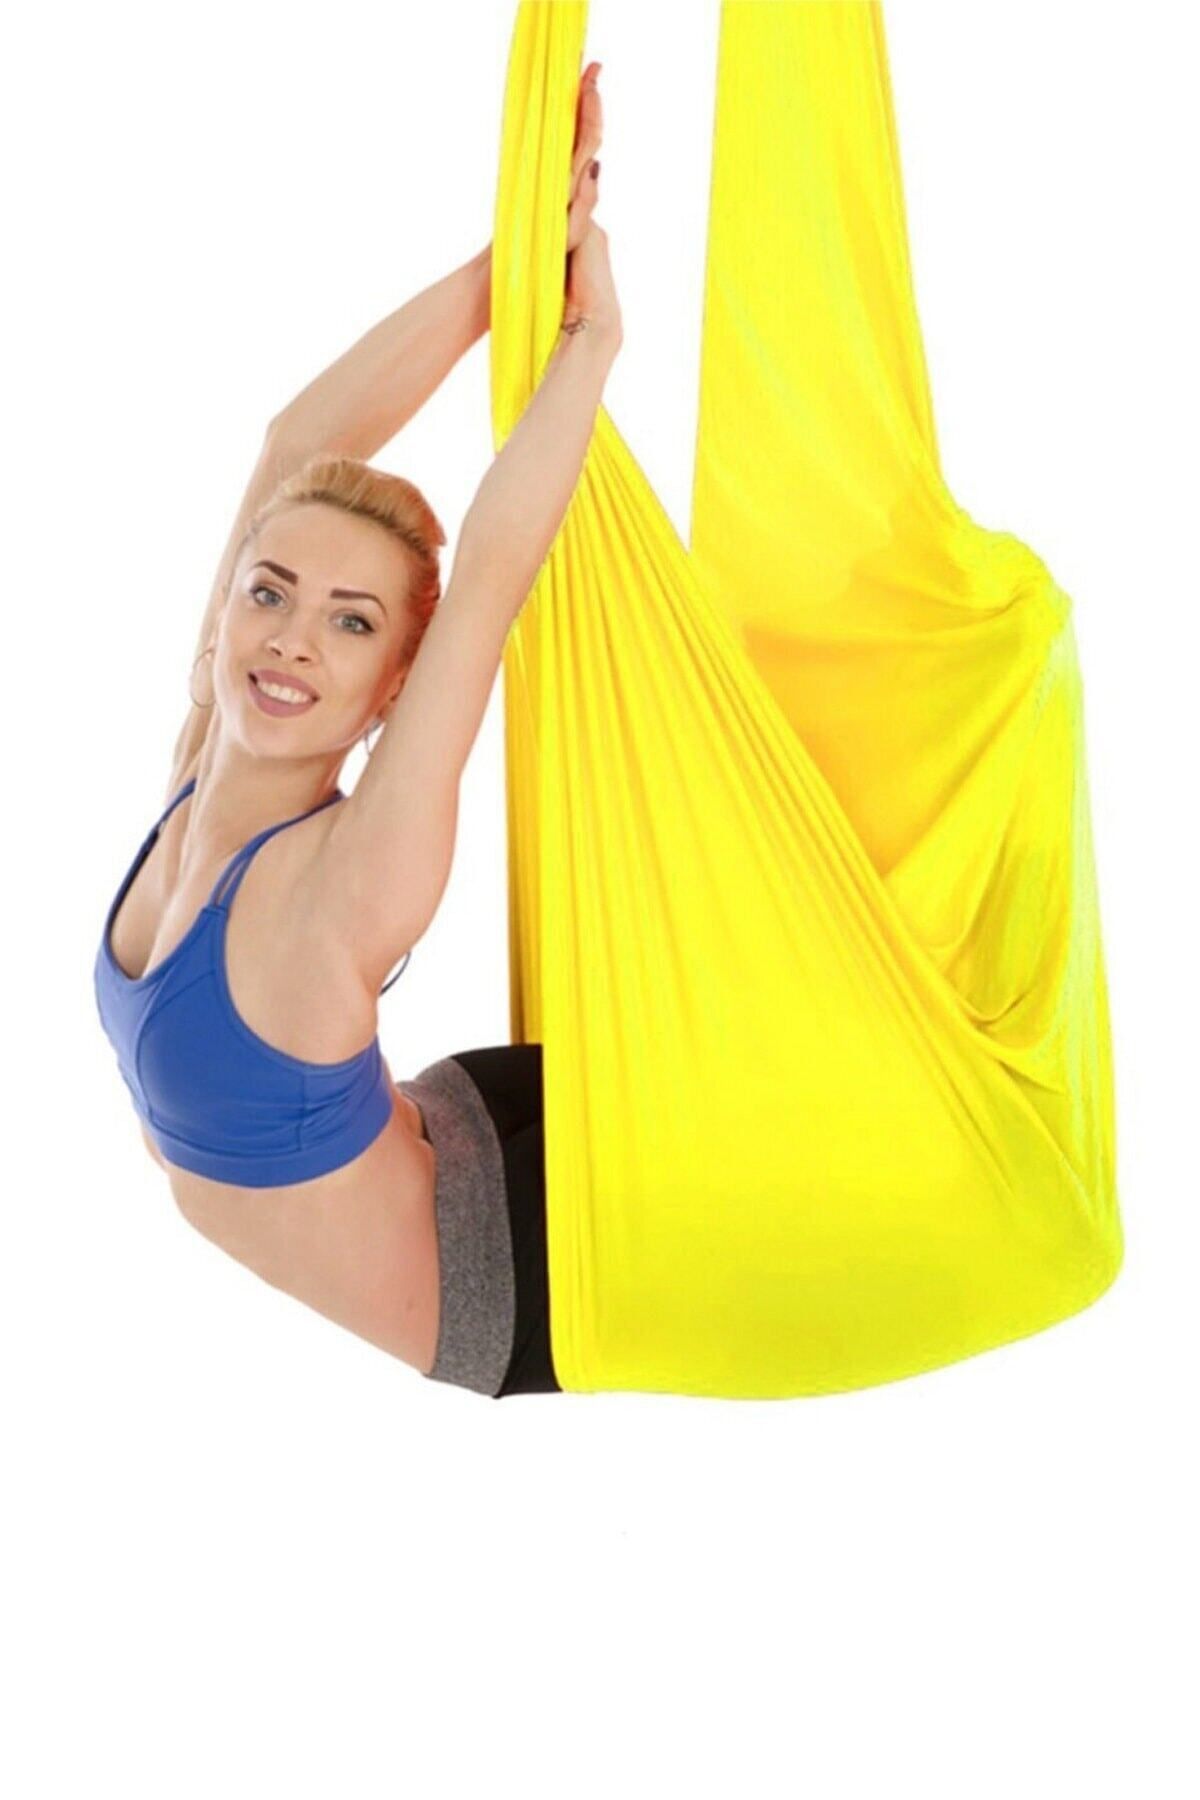 Bundera Yoga Fly Hamağı Sarı Tavana Askılı Yer Çekimsiz Fitness Pilates Hava Akrobasi Egzersiz Denge Aleti